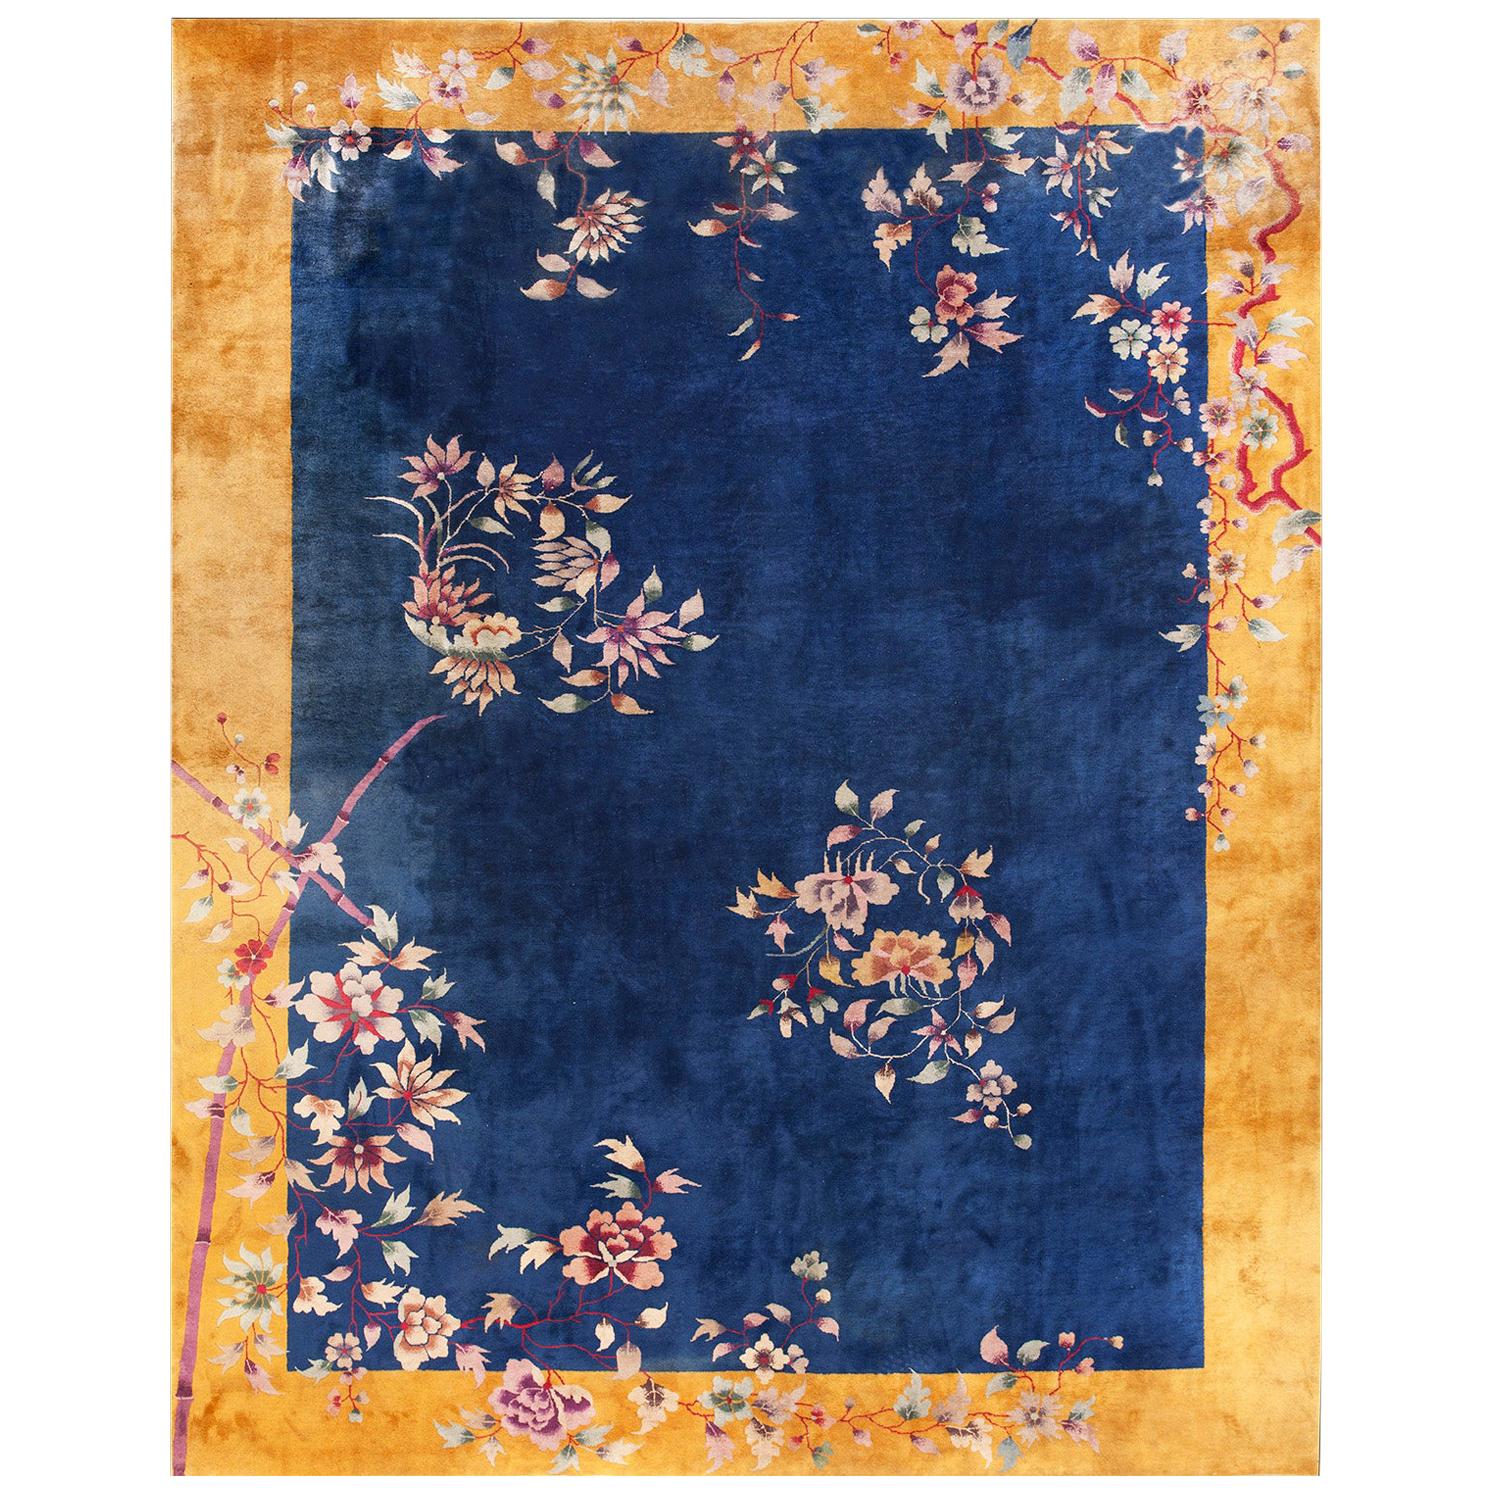 Chinesischer Art-Déco-Teppich aus den 1920er Jahren ( 8''10 x 11''4 - 270 x 345)